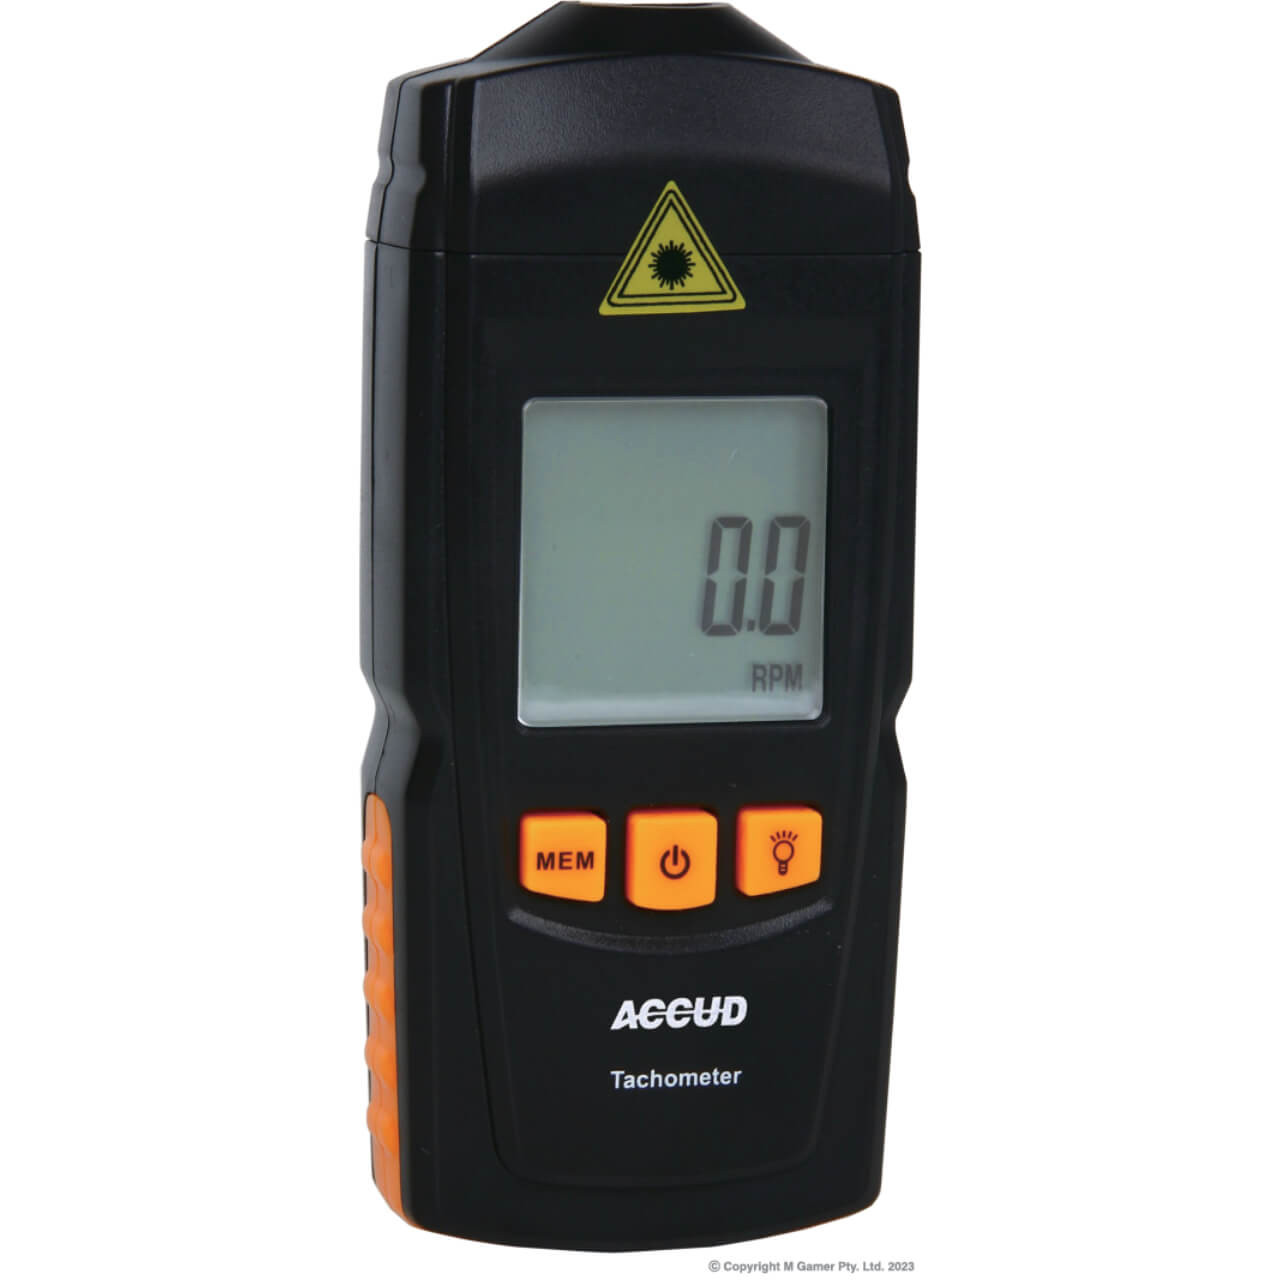 Accud Laser Tachometer